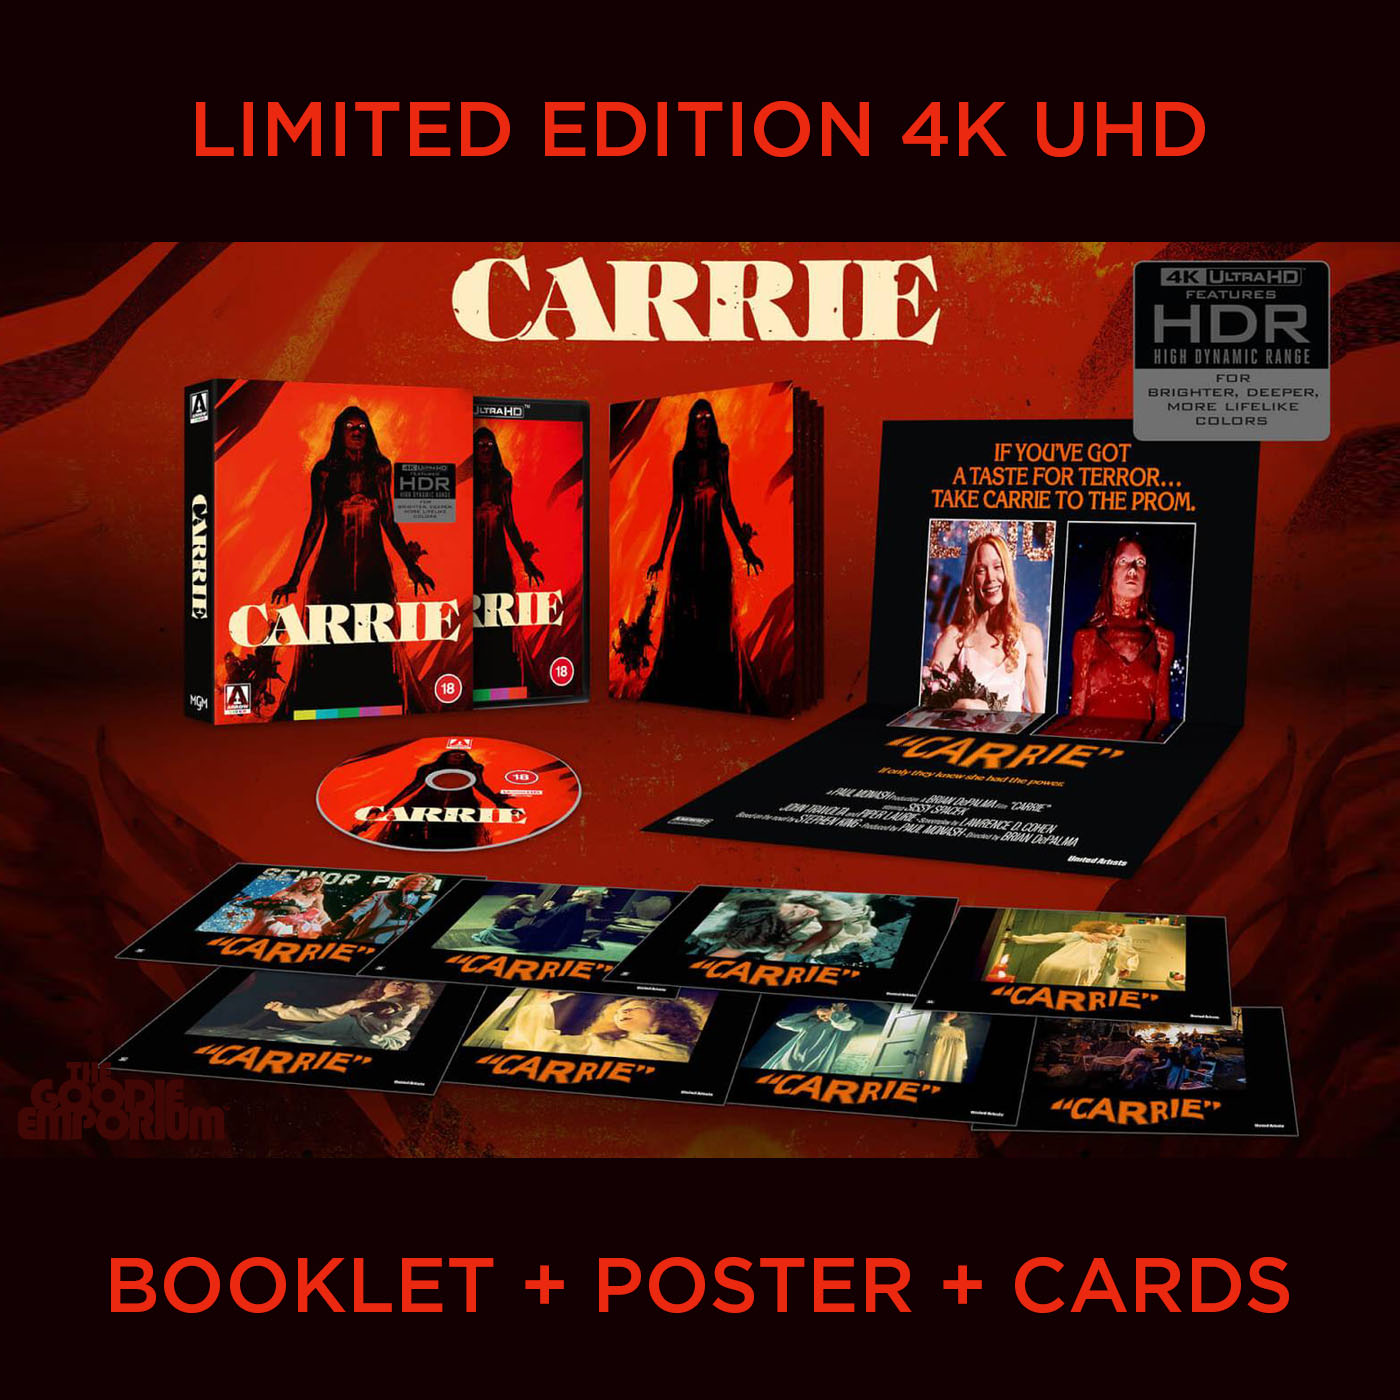 Carrie Brian De Palma Stephen King 1976 UHD 4K Arrow Films Ultra HD Blu-ray UK